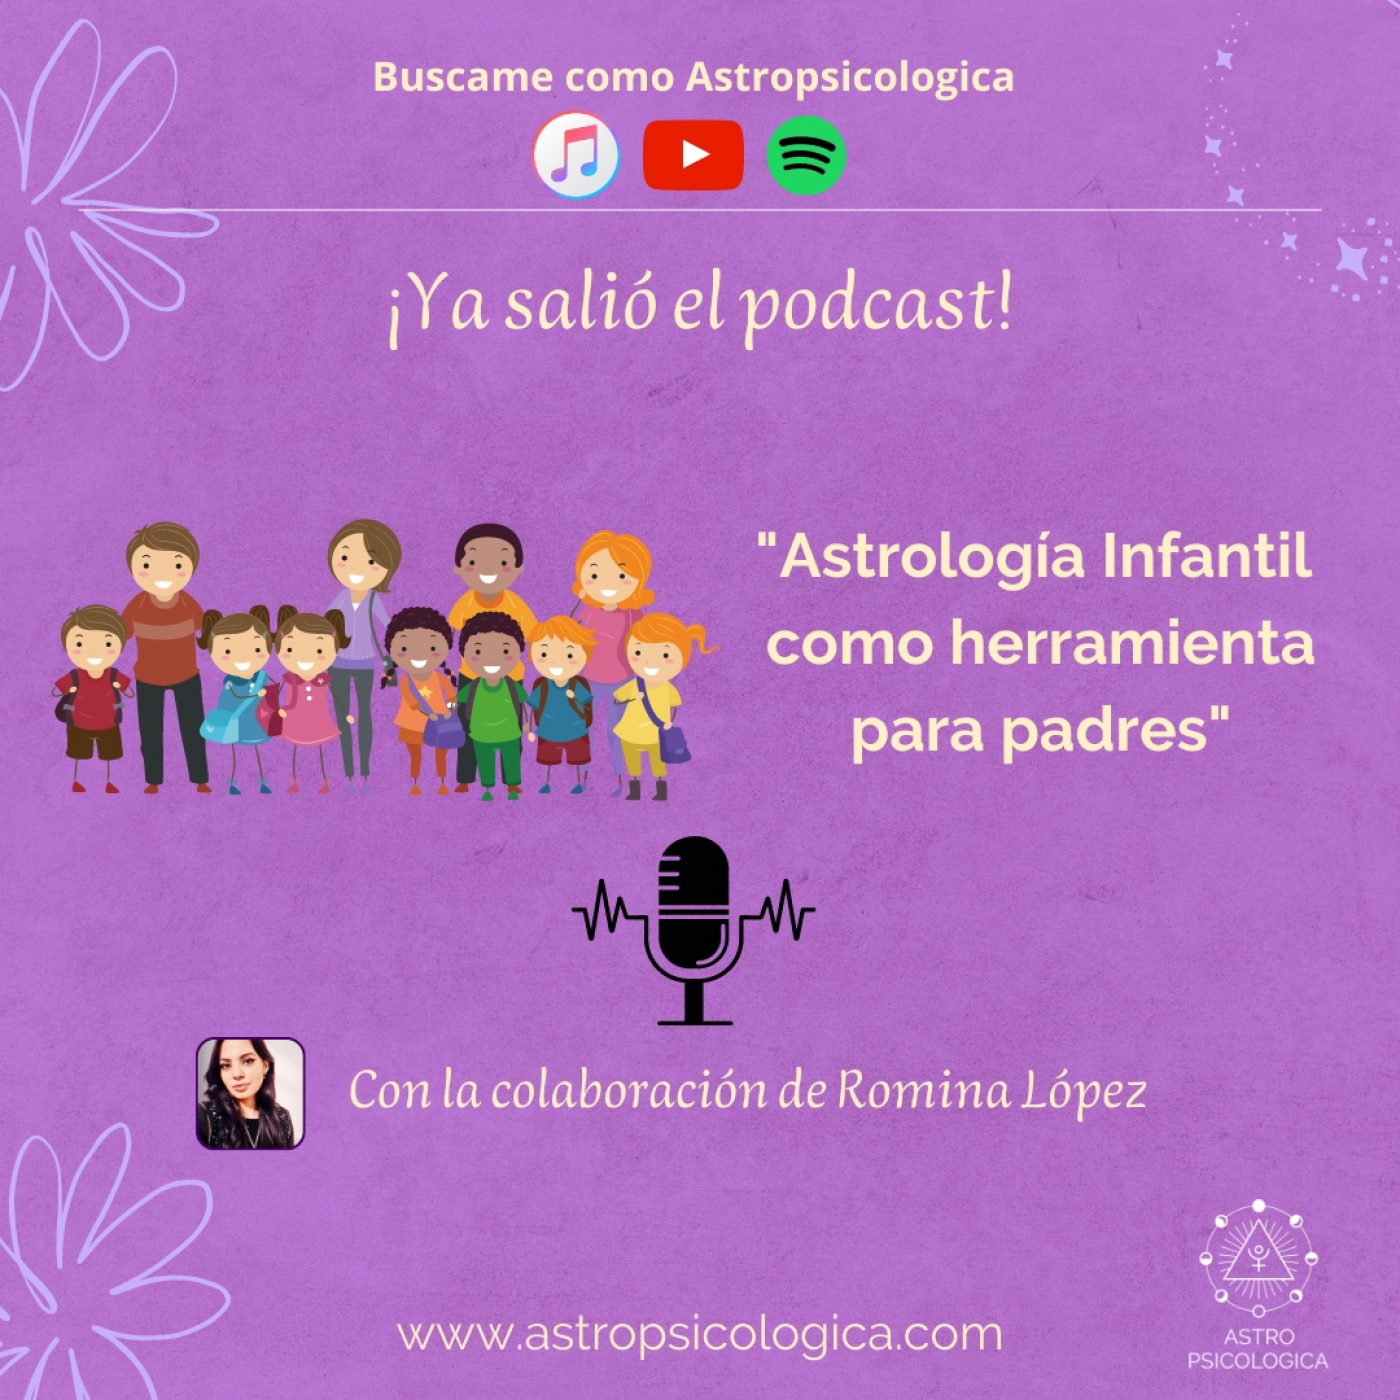 Astrología infantil: la Luna de los niños y los planetas en su desarrollo